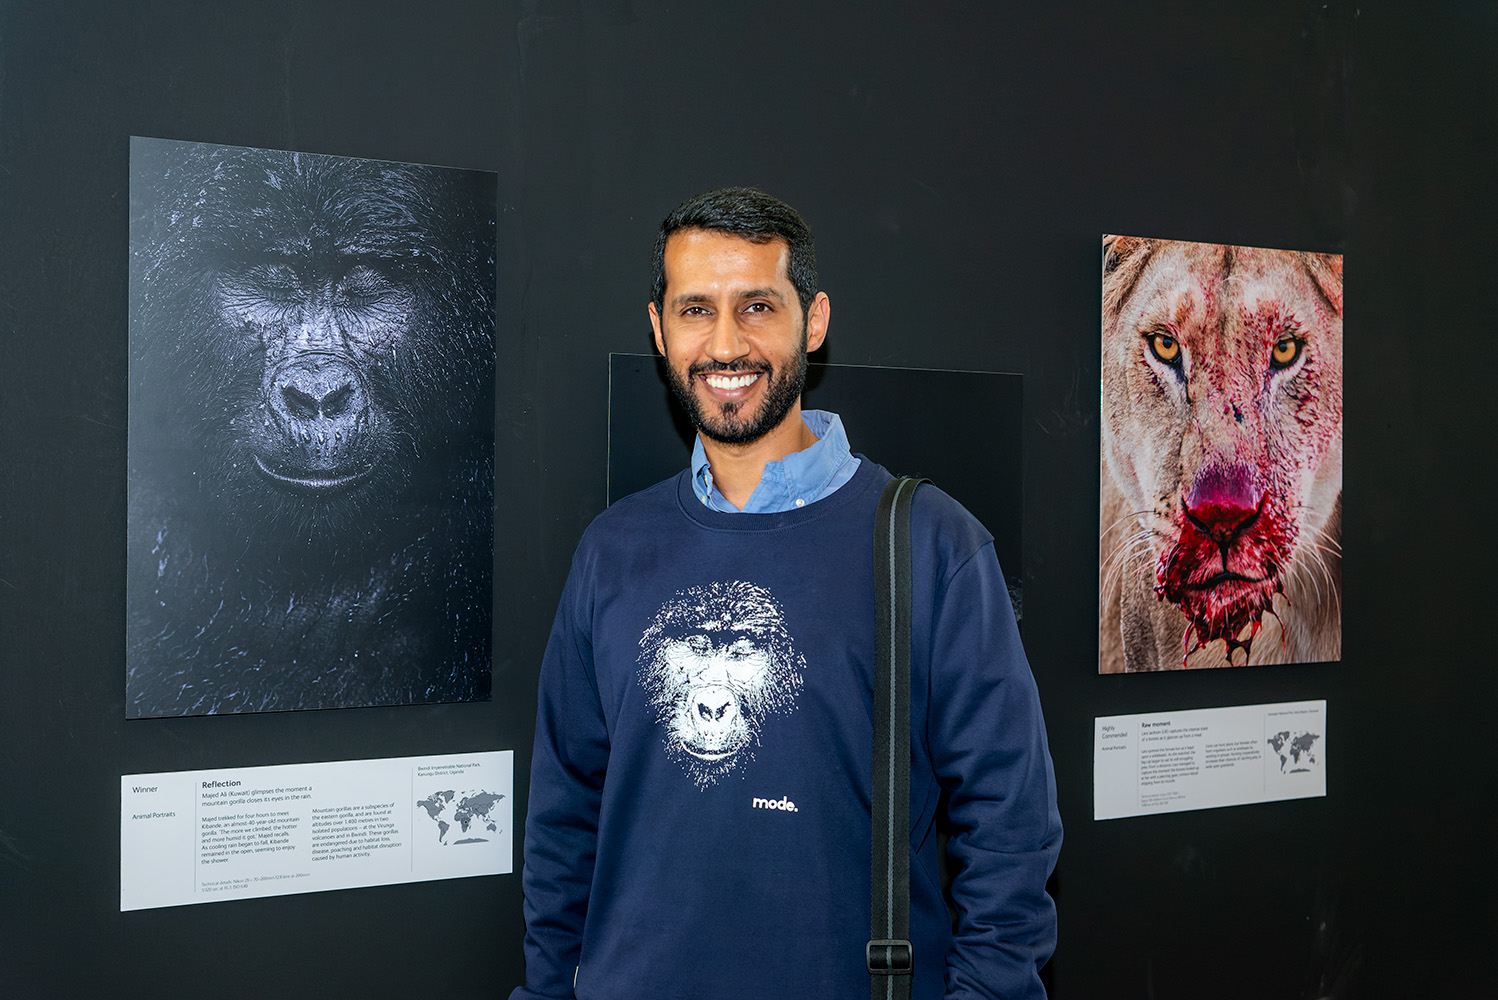 المصور الكويتي ماجد الزعابي الحاصل على المركز الاول بجائزة مصور الحياة البرية للعام 2021